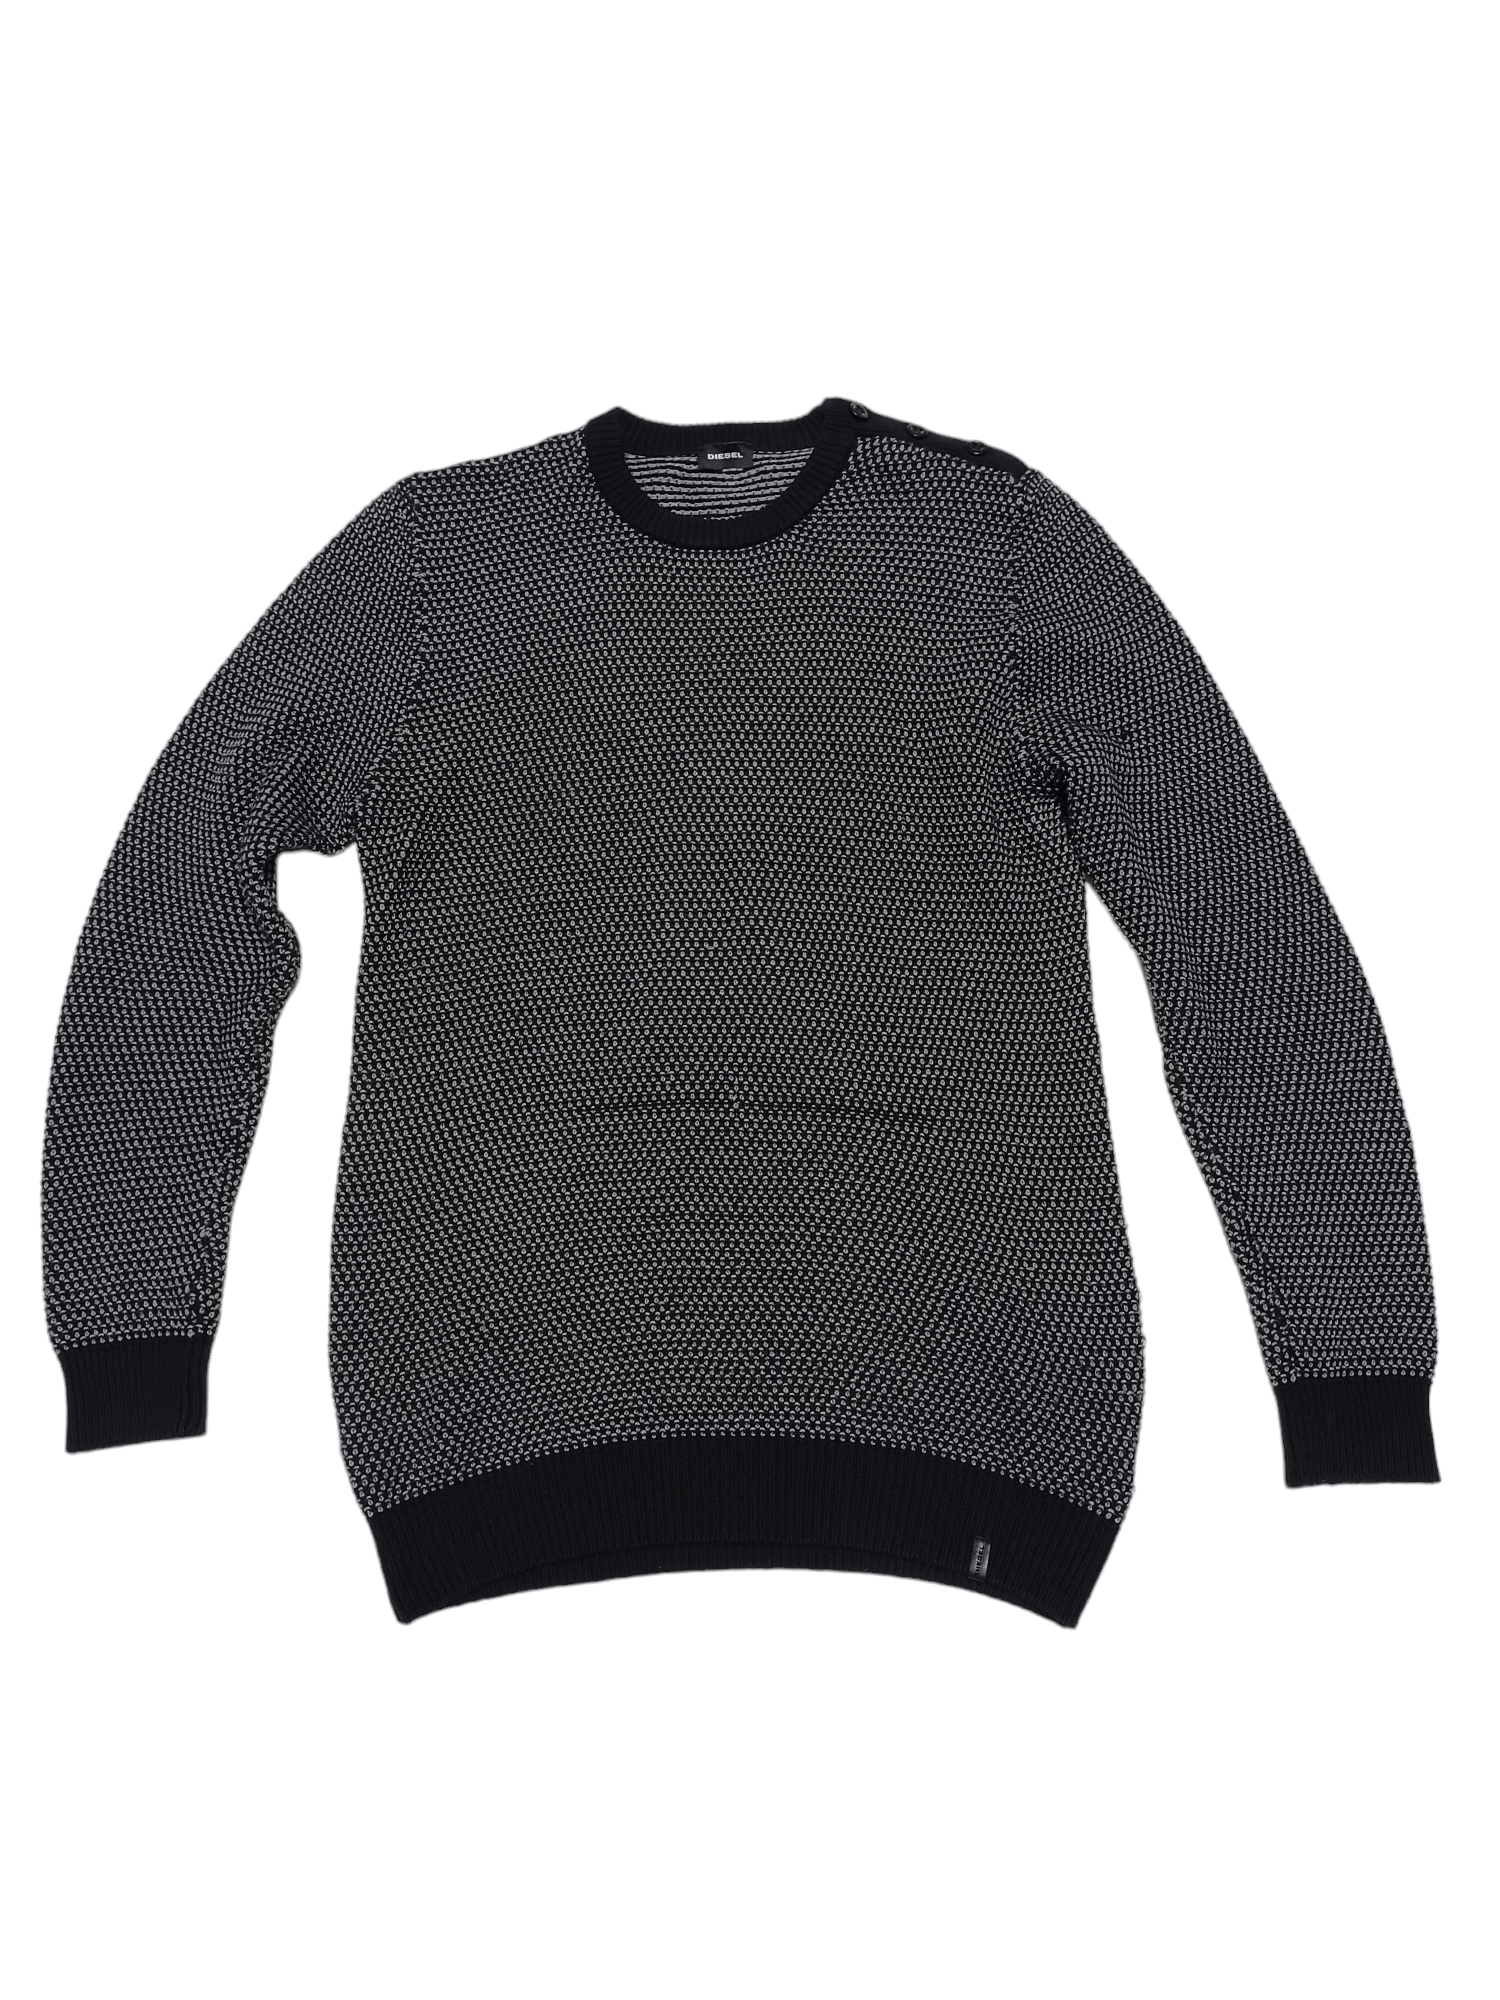 Pre-owned Avant Garde X Diesel Knit Long Sweater Avant Garde In Checkered